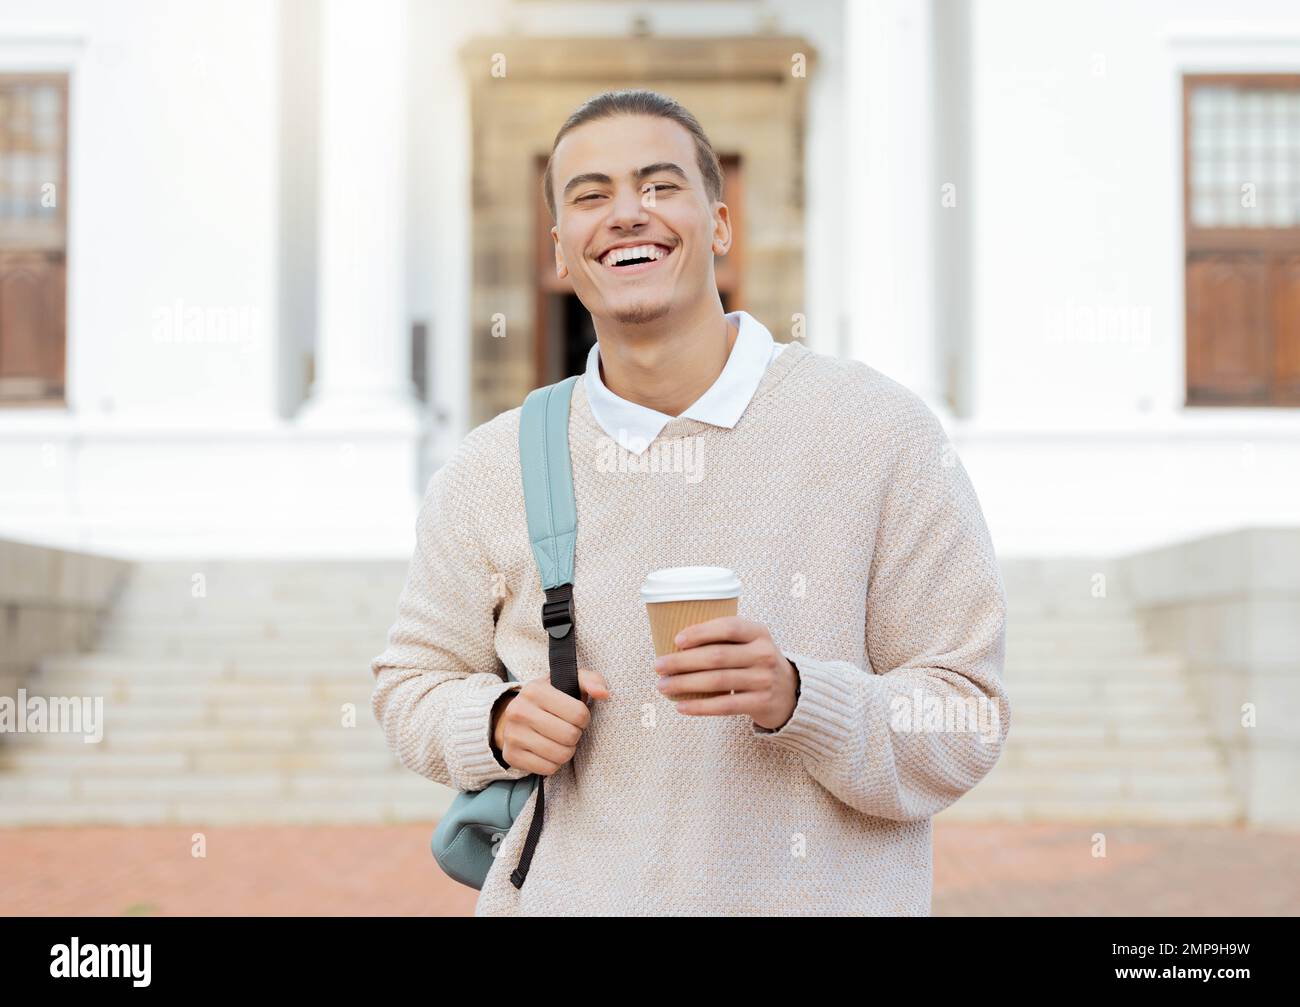 Felice, studente universitario uomo all'università con caffè per l'apprendimento, il futuro e accademico, il successo e l'istruzione superiore. Faccia, allievo e borsa di studio Foto Stock